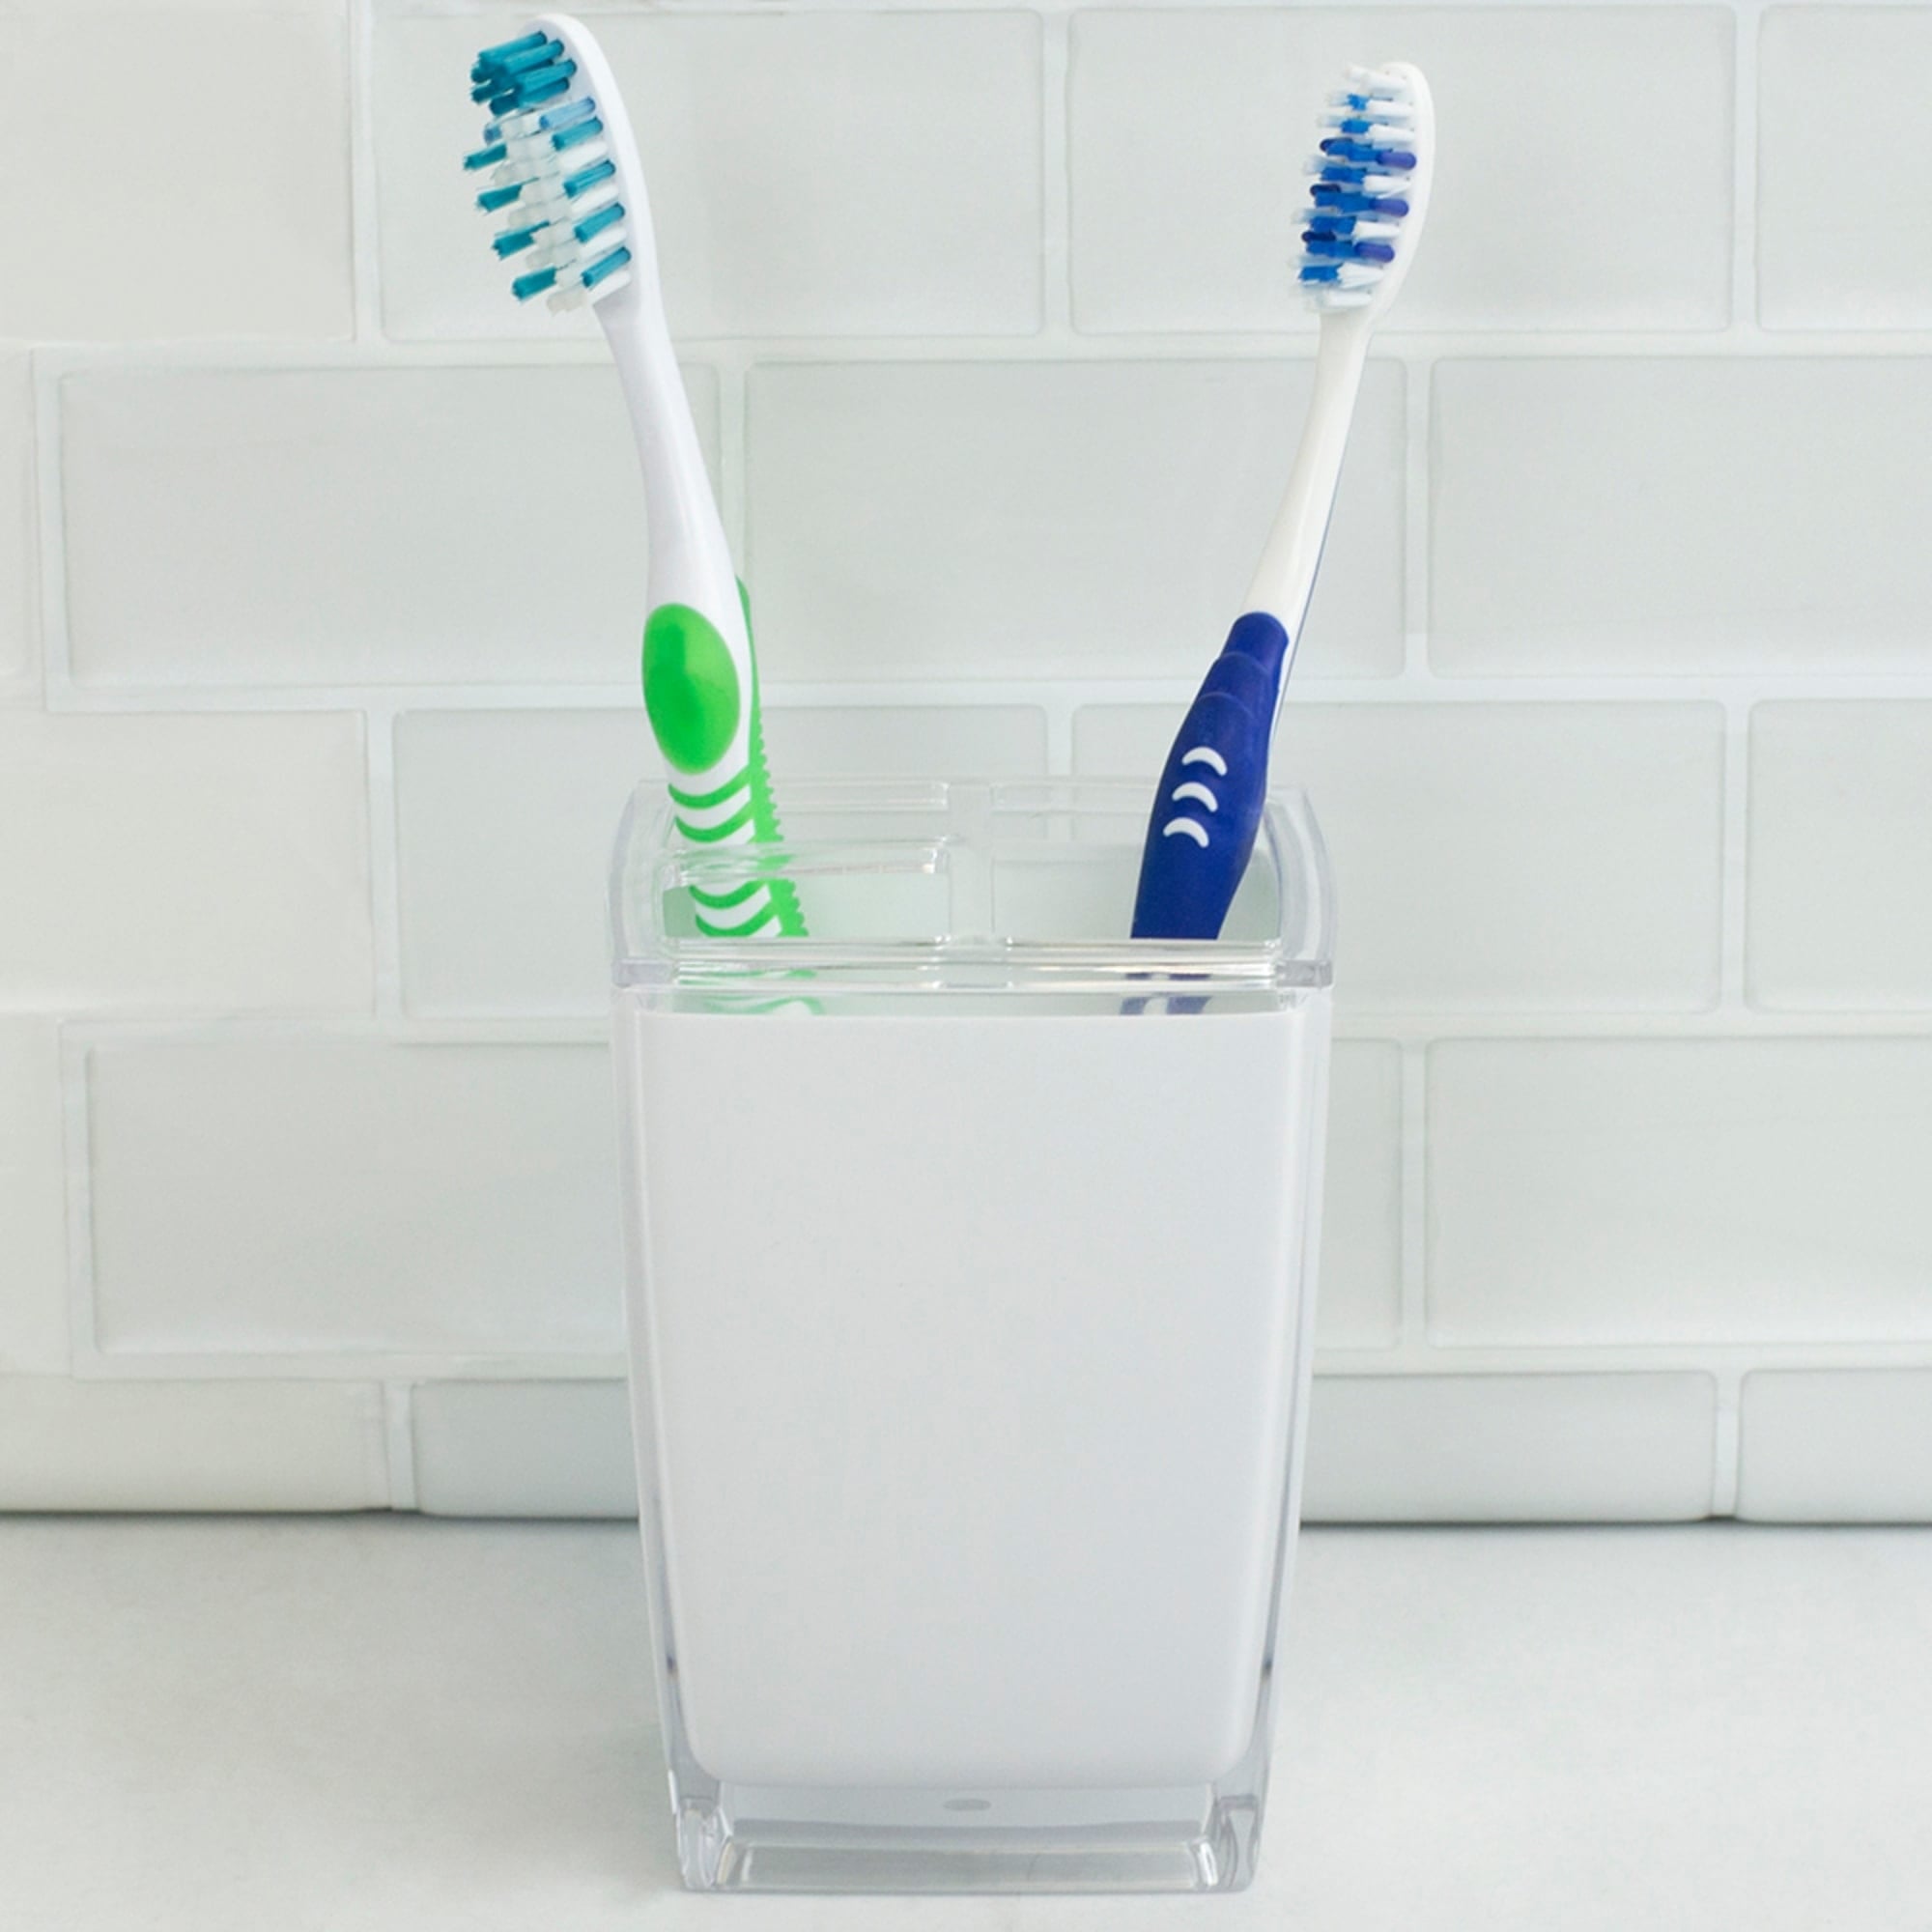 Home Basics Break-Resistant Plastic Toothbrush Holder, White $3.00 EACH, CASE PACK OF 24